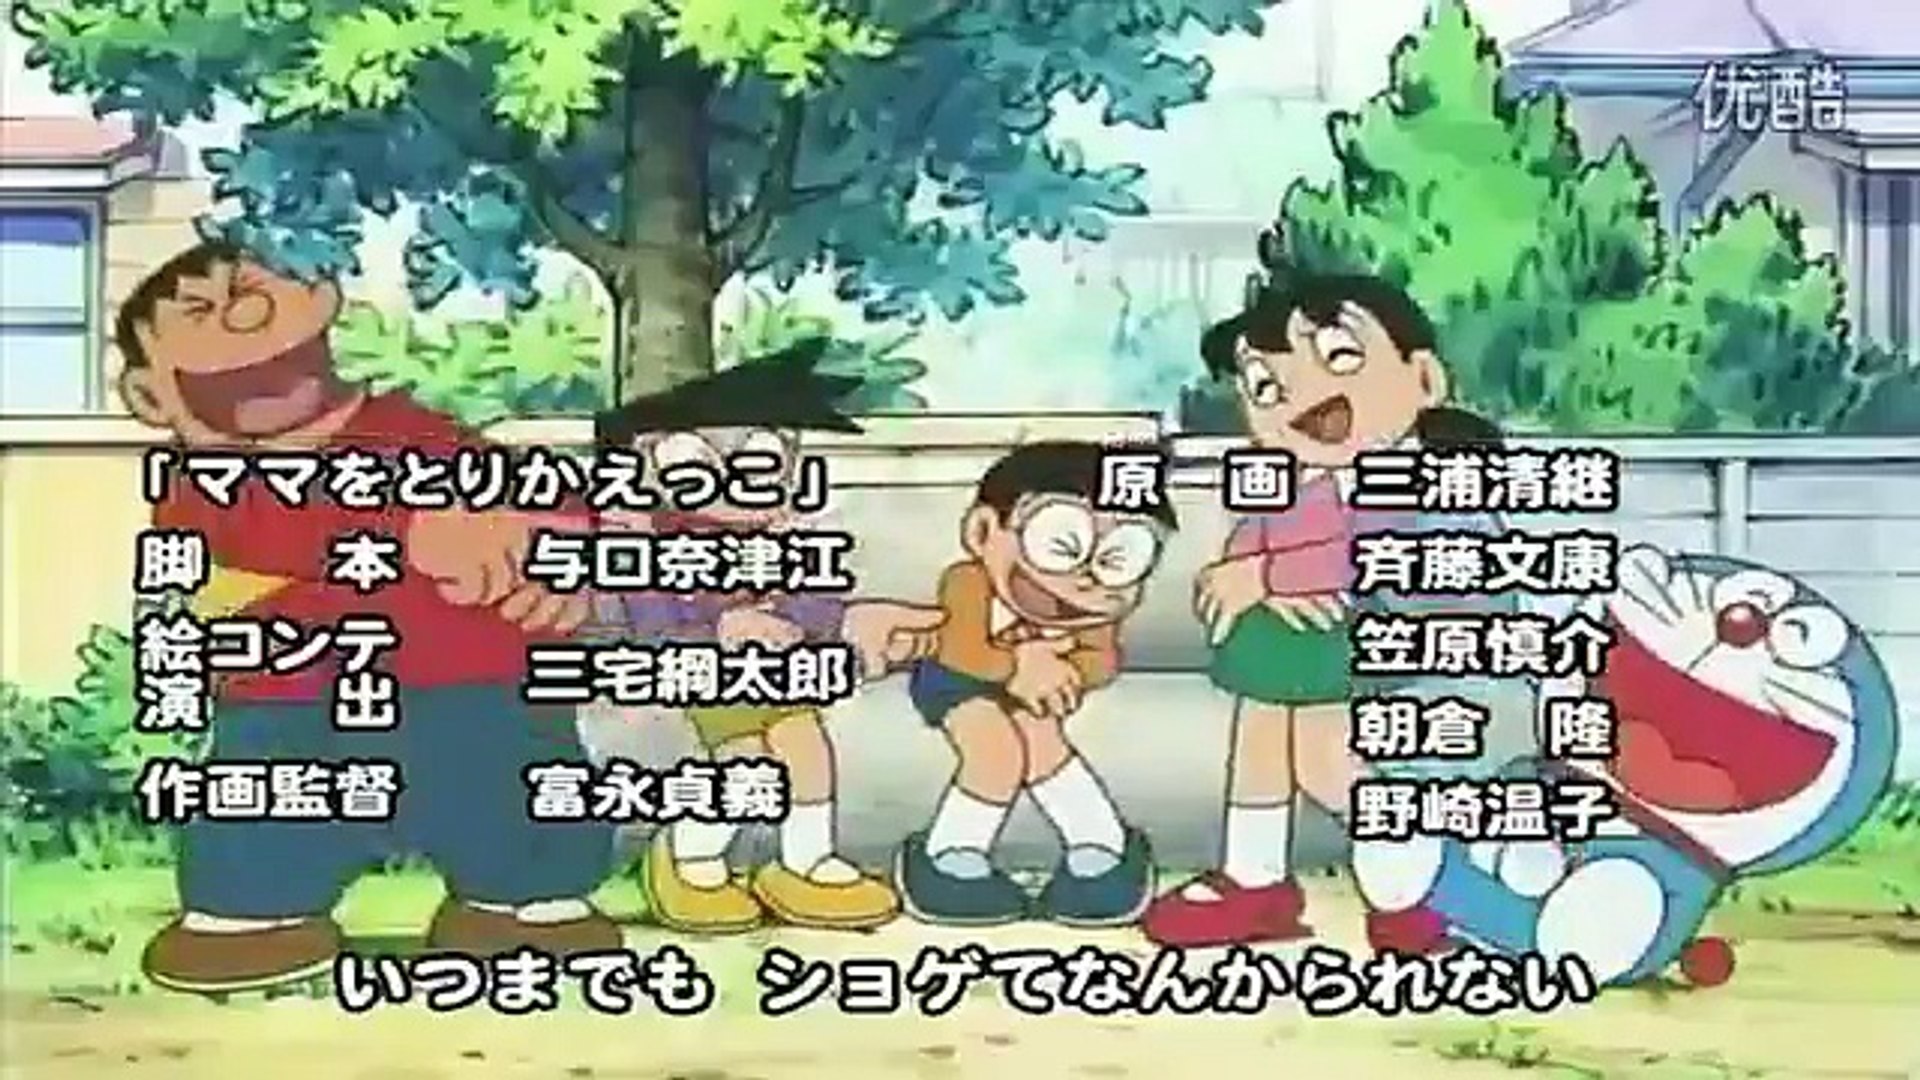 ハグしちゃお 2005年op映像 Hugushichao Doraemon Japanese